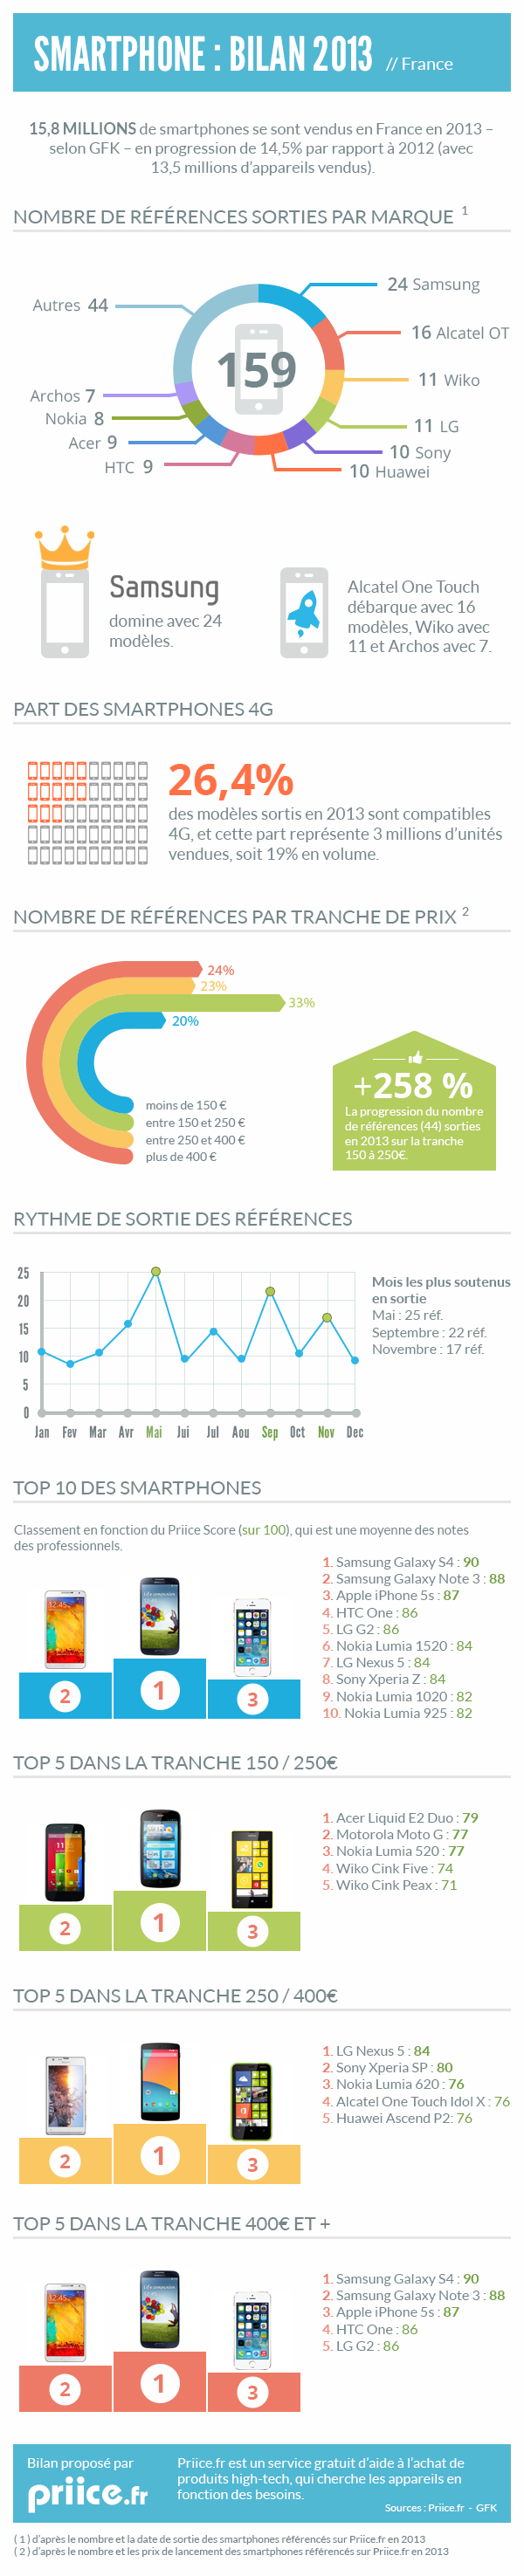 infographie-bilan-smartphones-2013